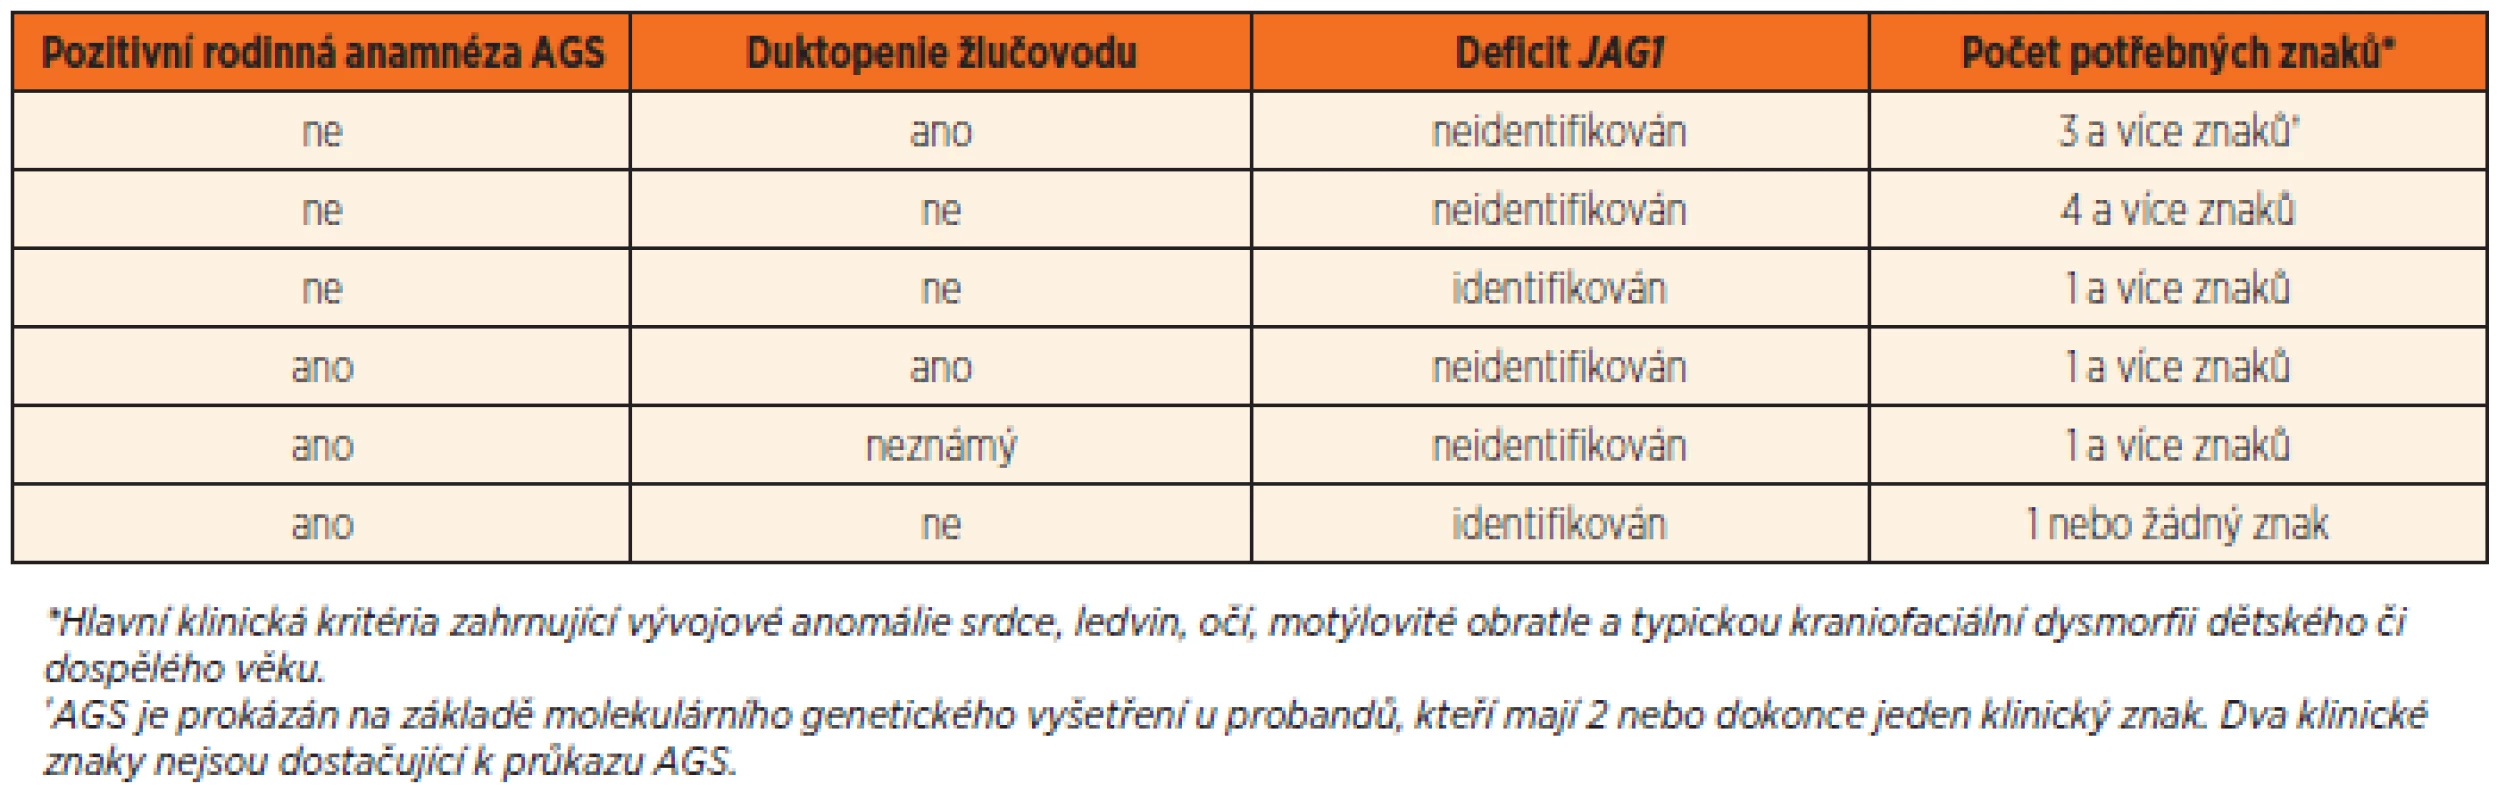 Revidovaná diagnostická kritéria diagnózy Alagilleova syndromu.